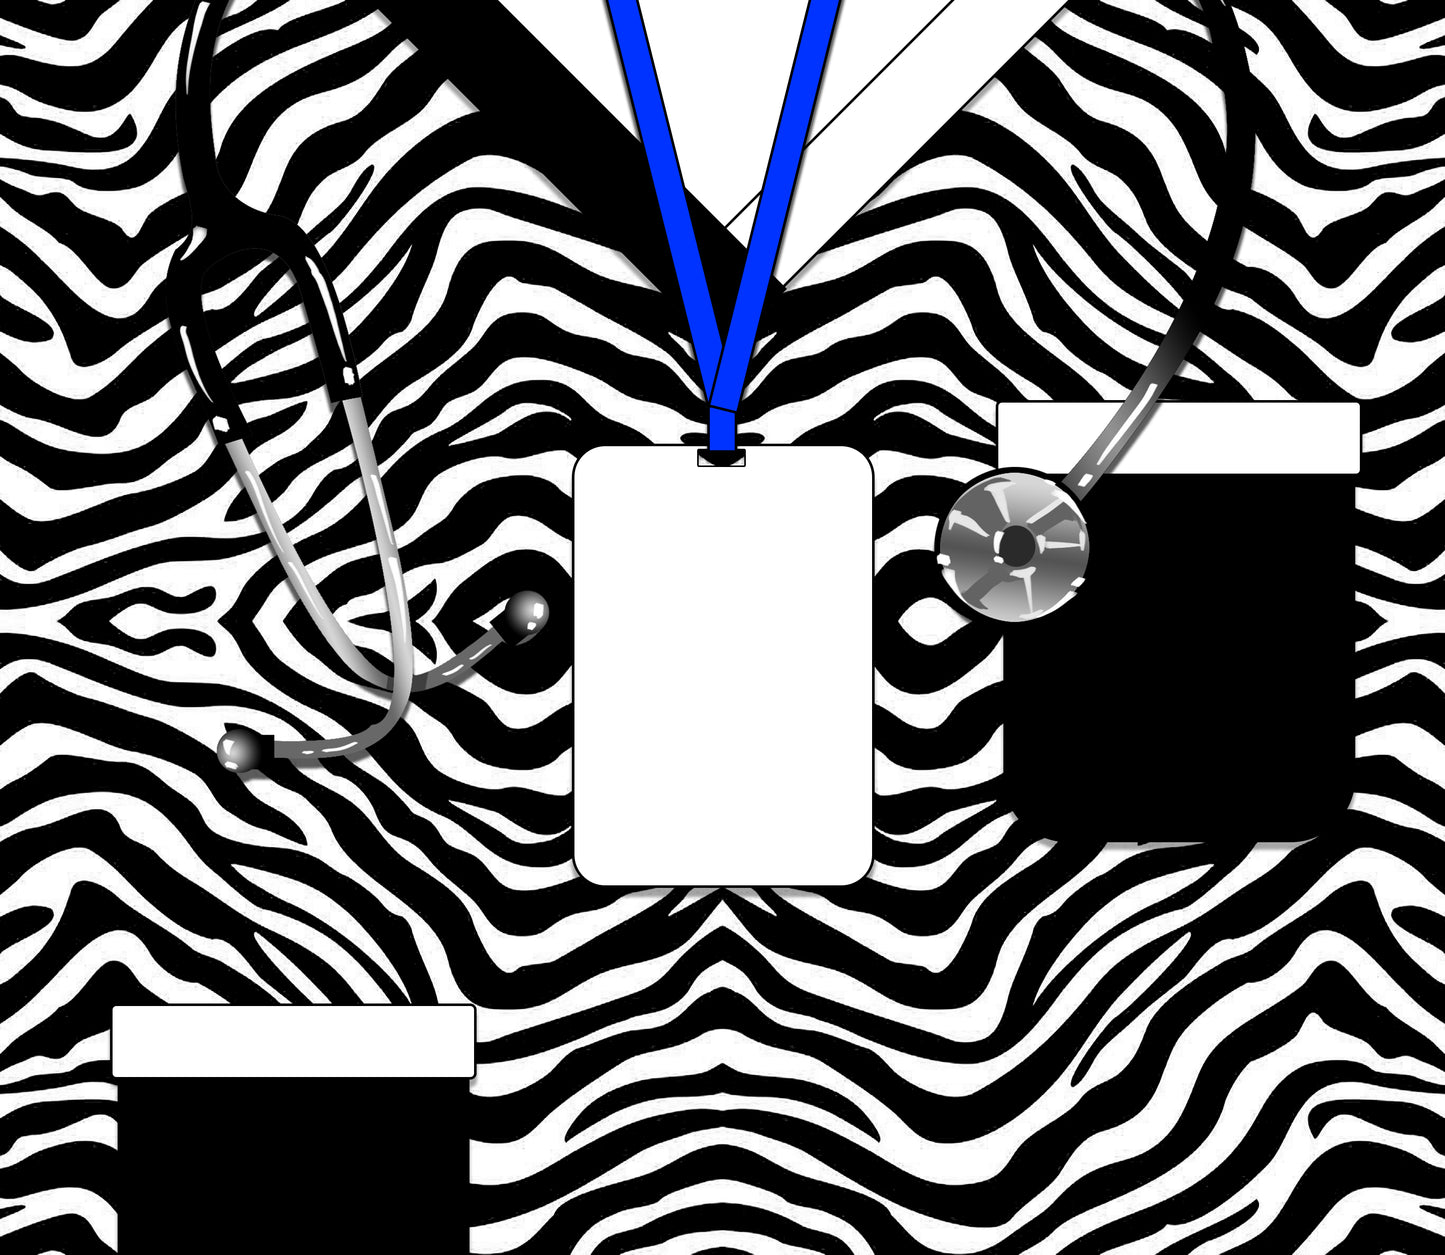 Zebra Scrubs - Name Badge.jpg